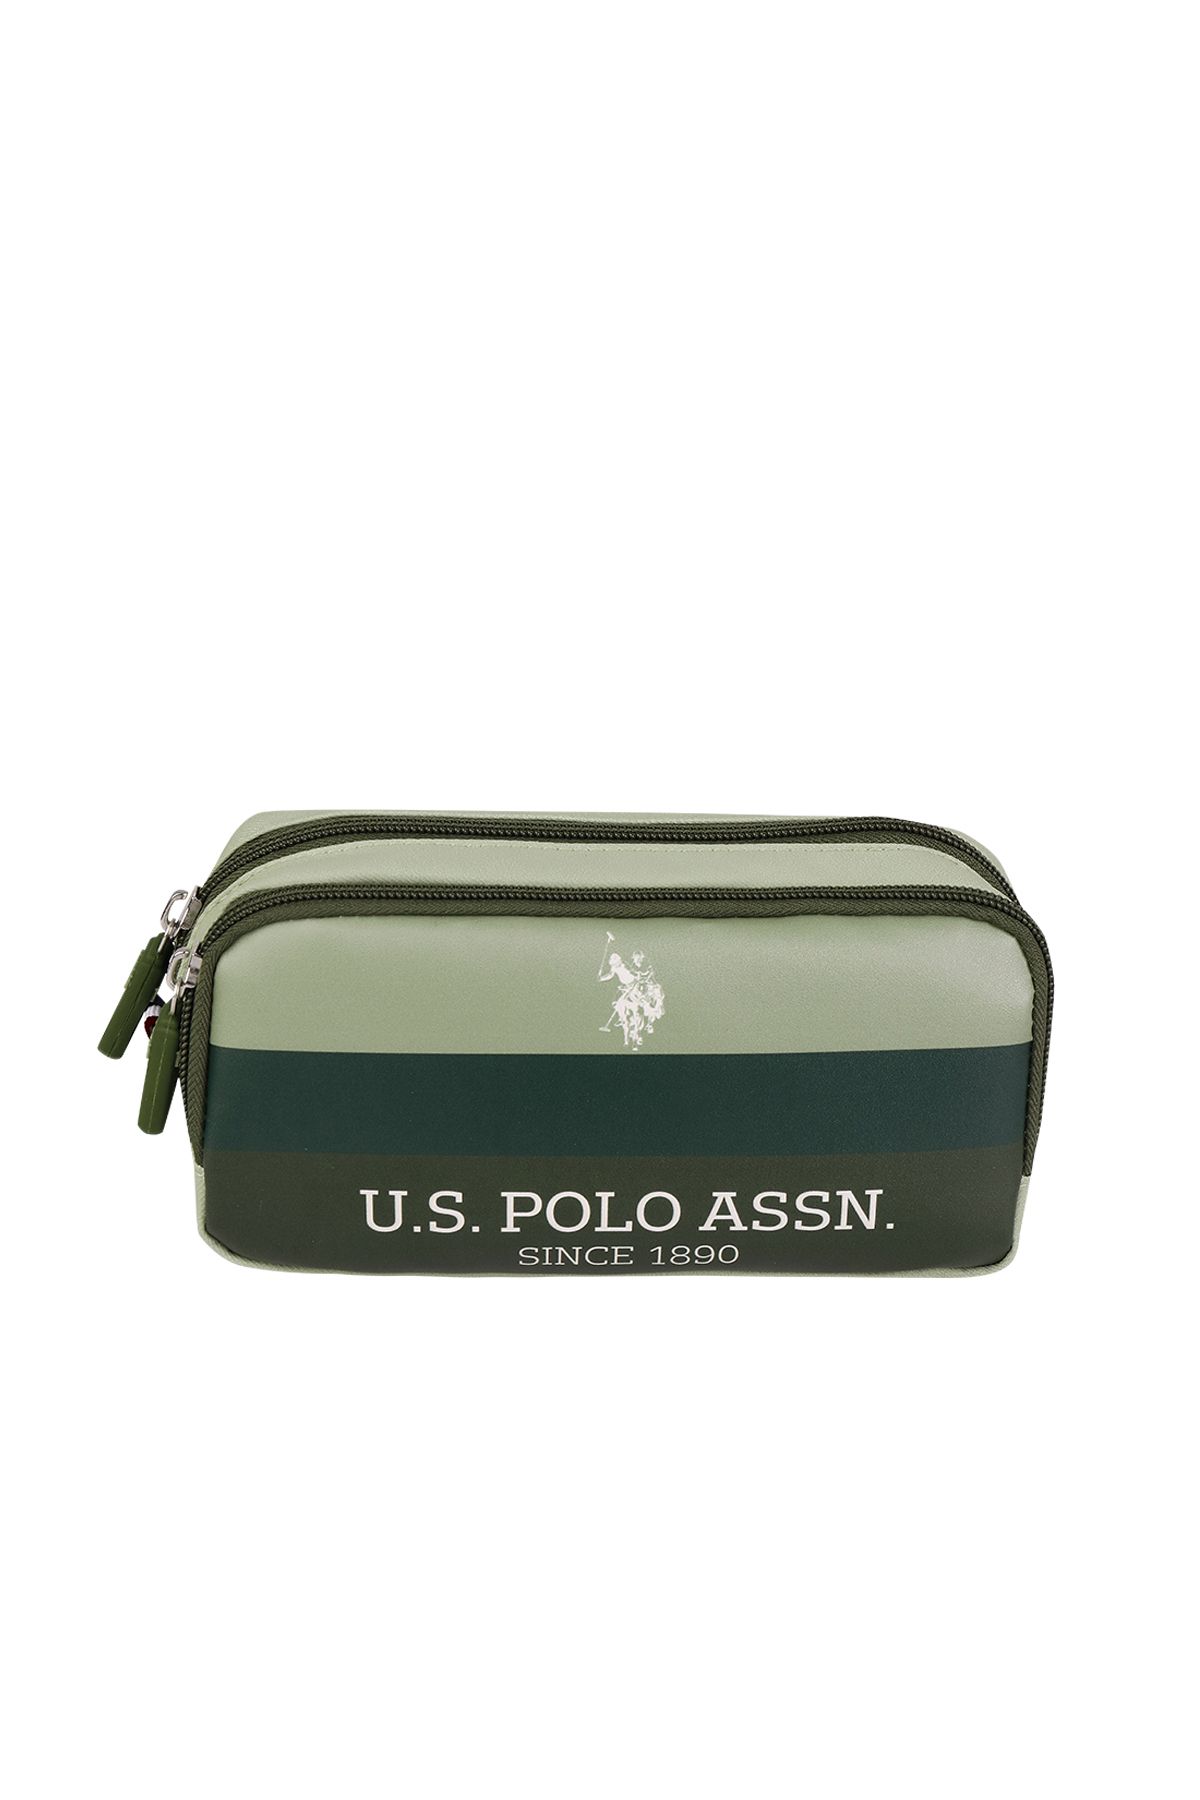 U.S. Polo Assn. U.S Polo Kalem Çantası Kalemlik PLKLK24179